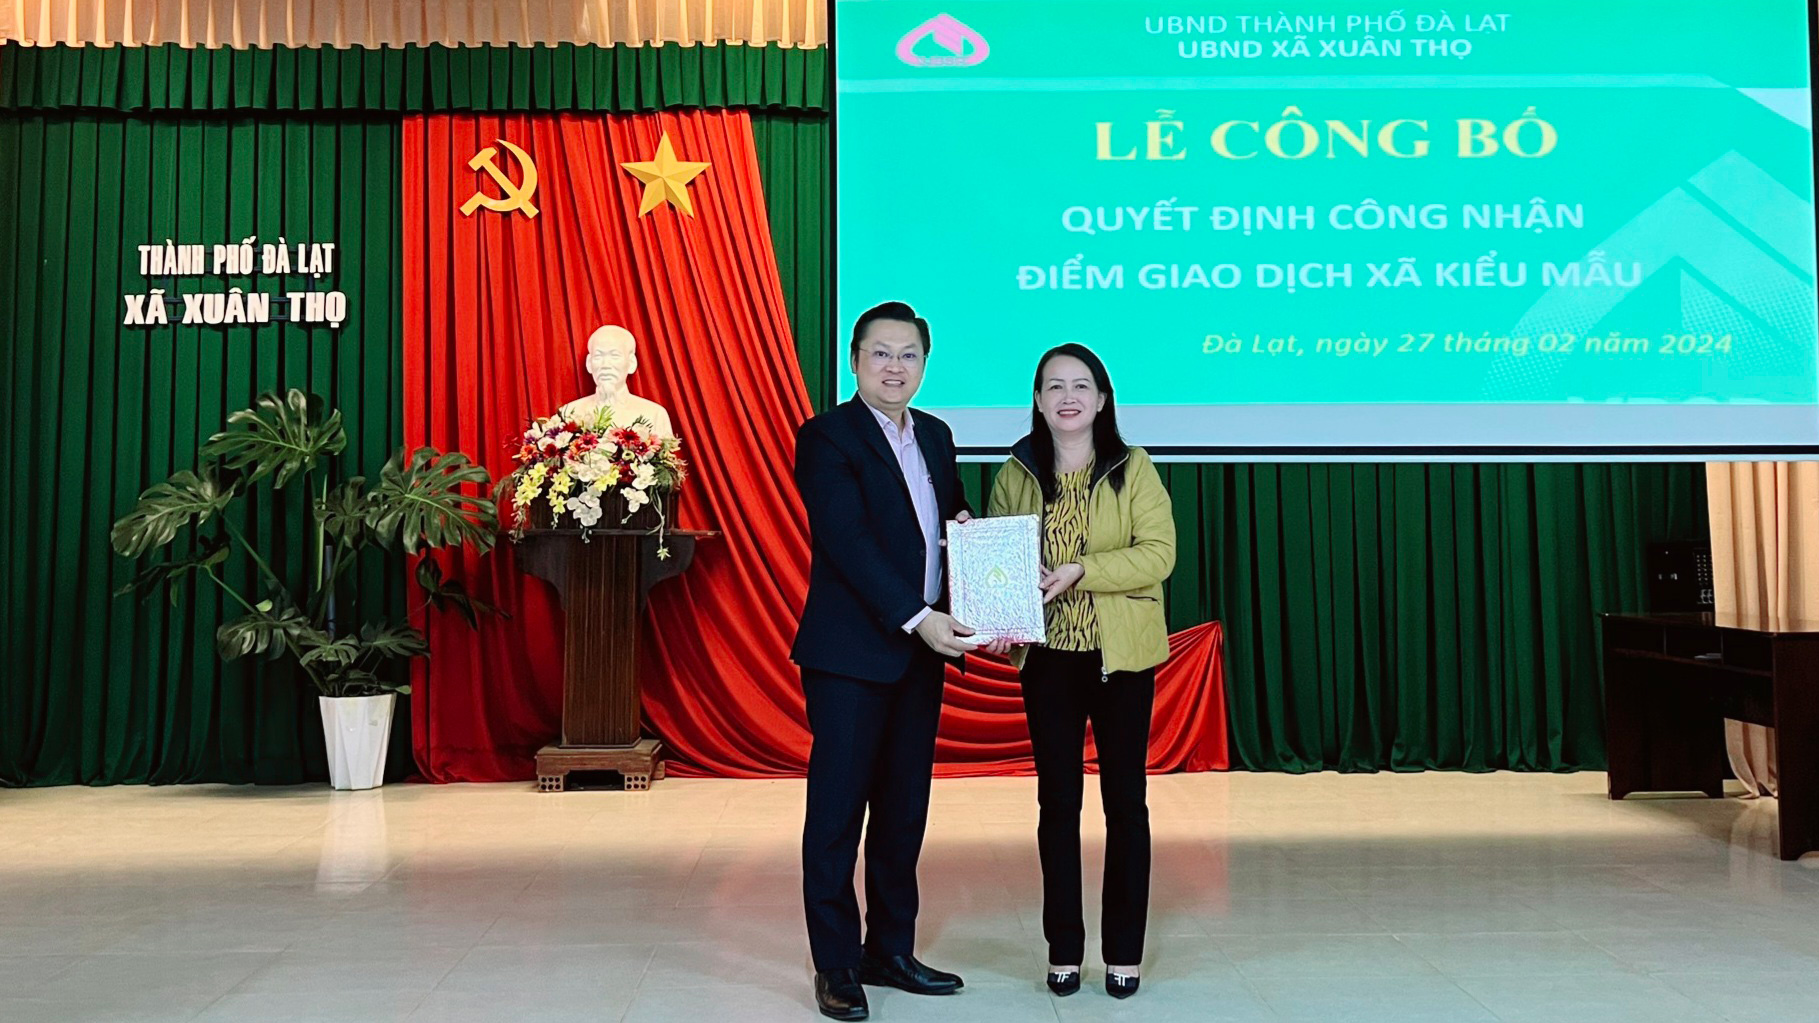 Ông Nguyễn Hữu Quang - Phó Giám đốc NHCSXH Chi nhánh tỉnh Lâm Đồng 
trao Quyết định công nhận ĐGDXKM tại xã Xuân Thọ